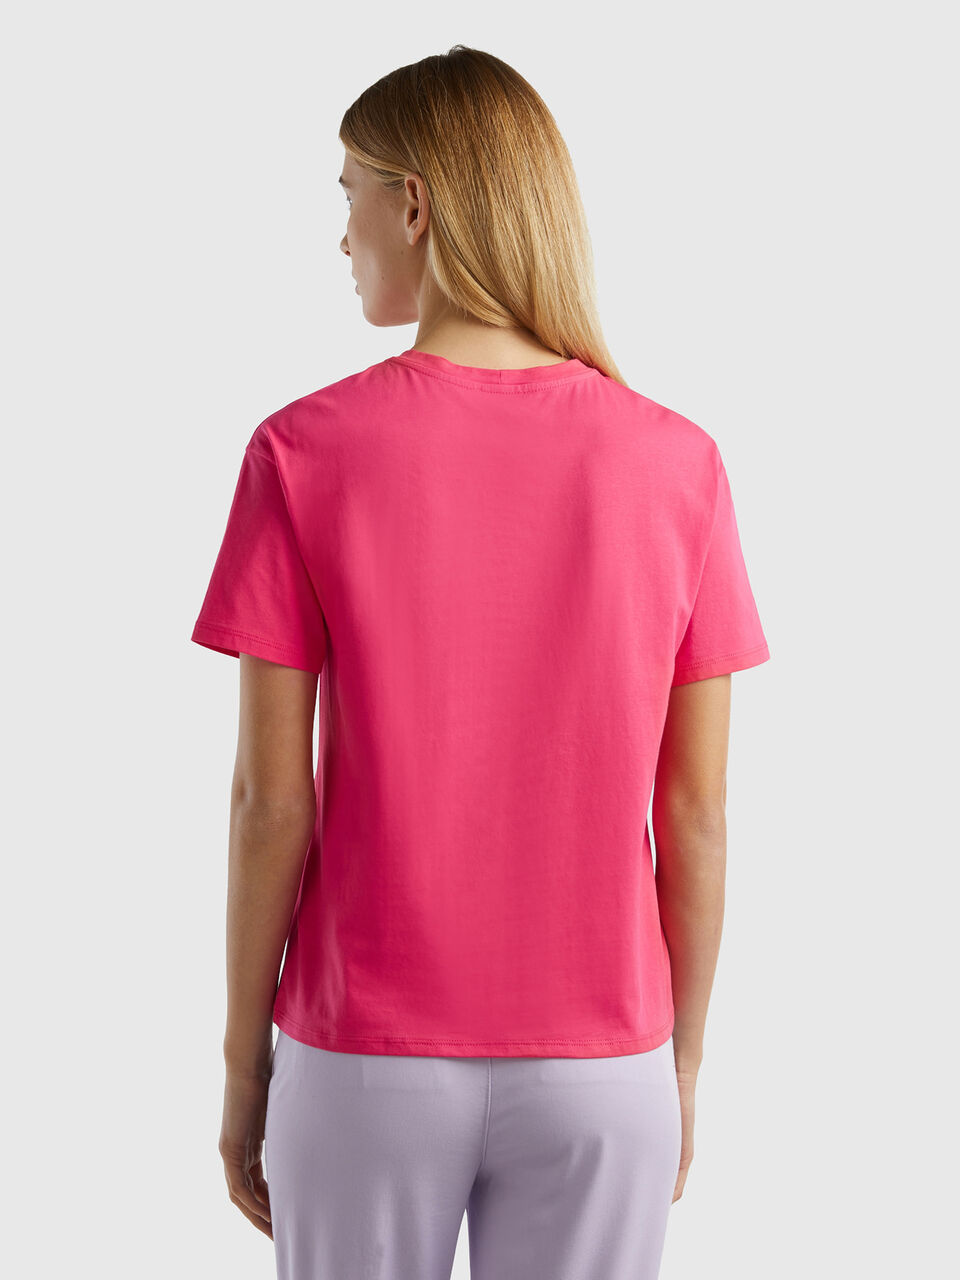 Short sleeve 100% cotton - Fuchsia t-shirt Benetton 